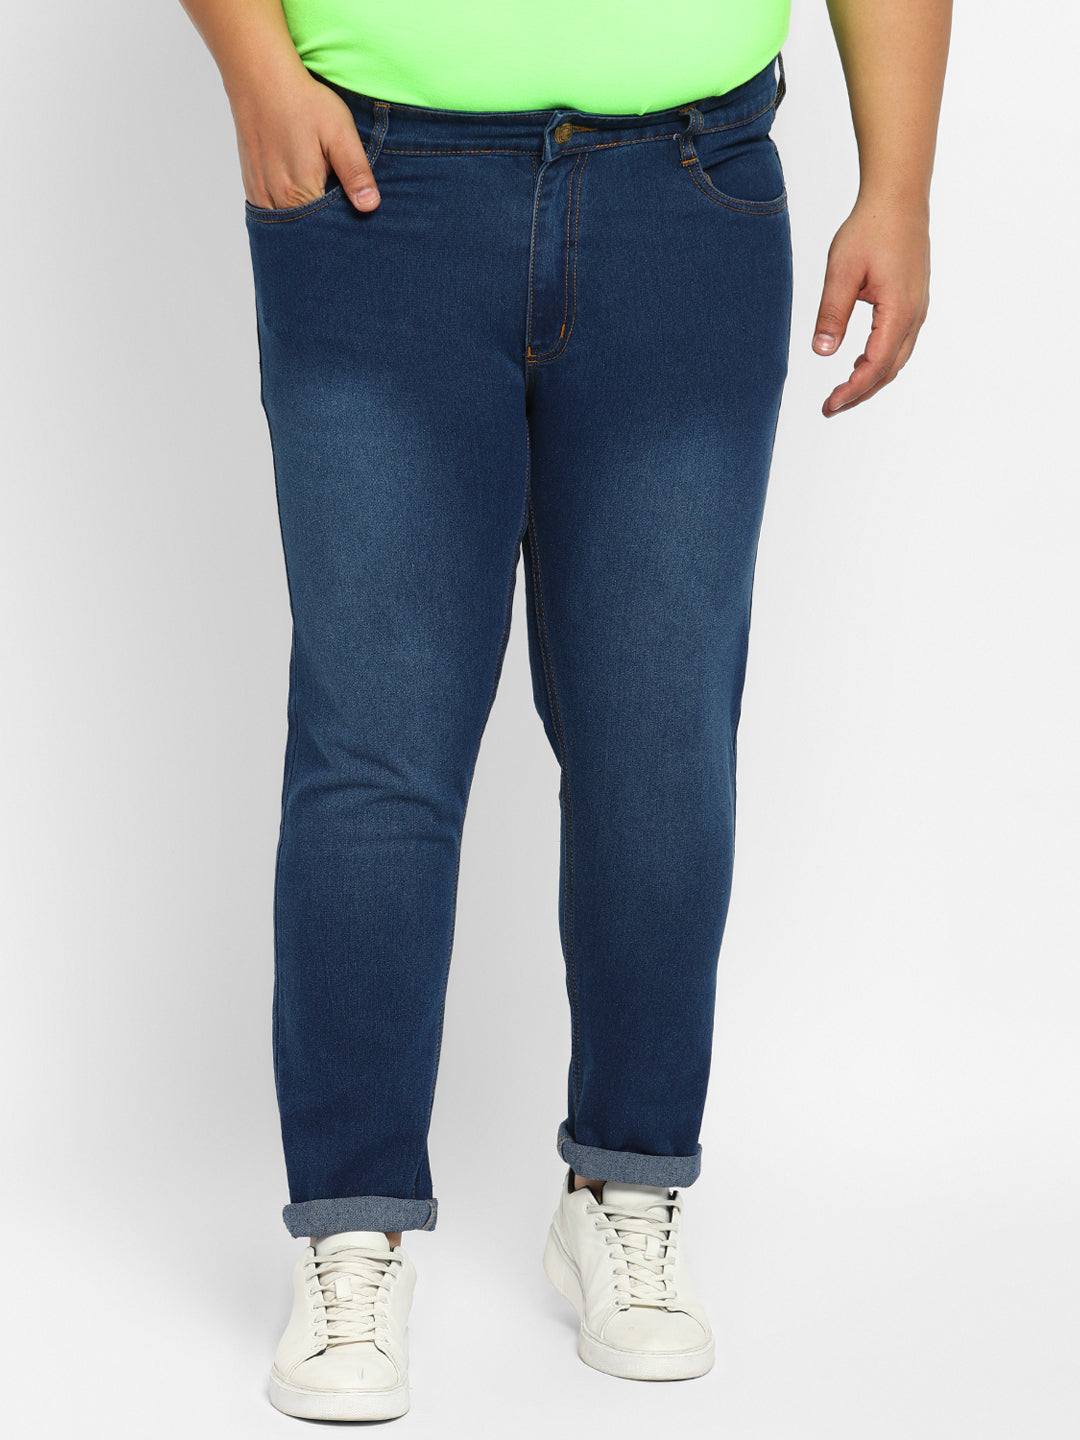 Men's Blue Regular Fit Washed Denim Jeans Stretchable